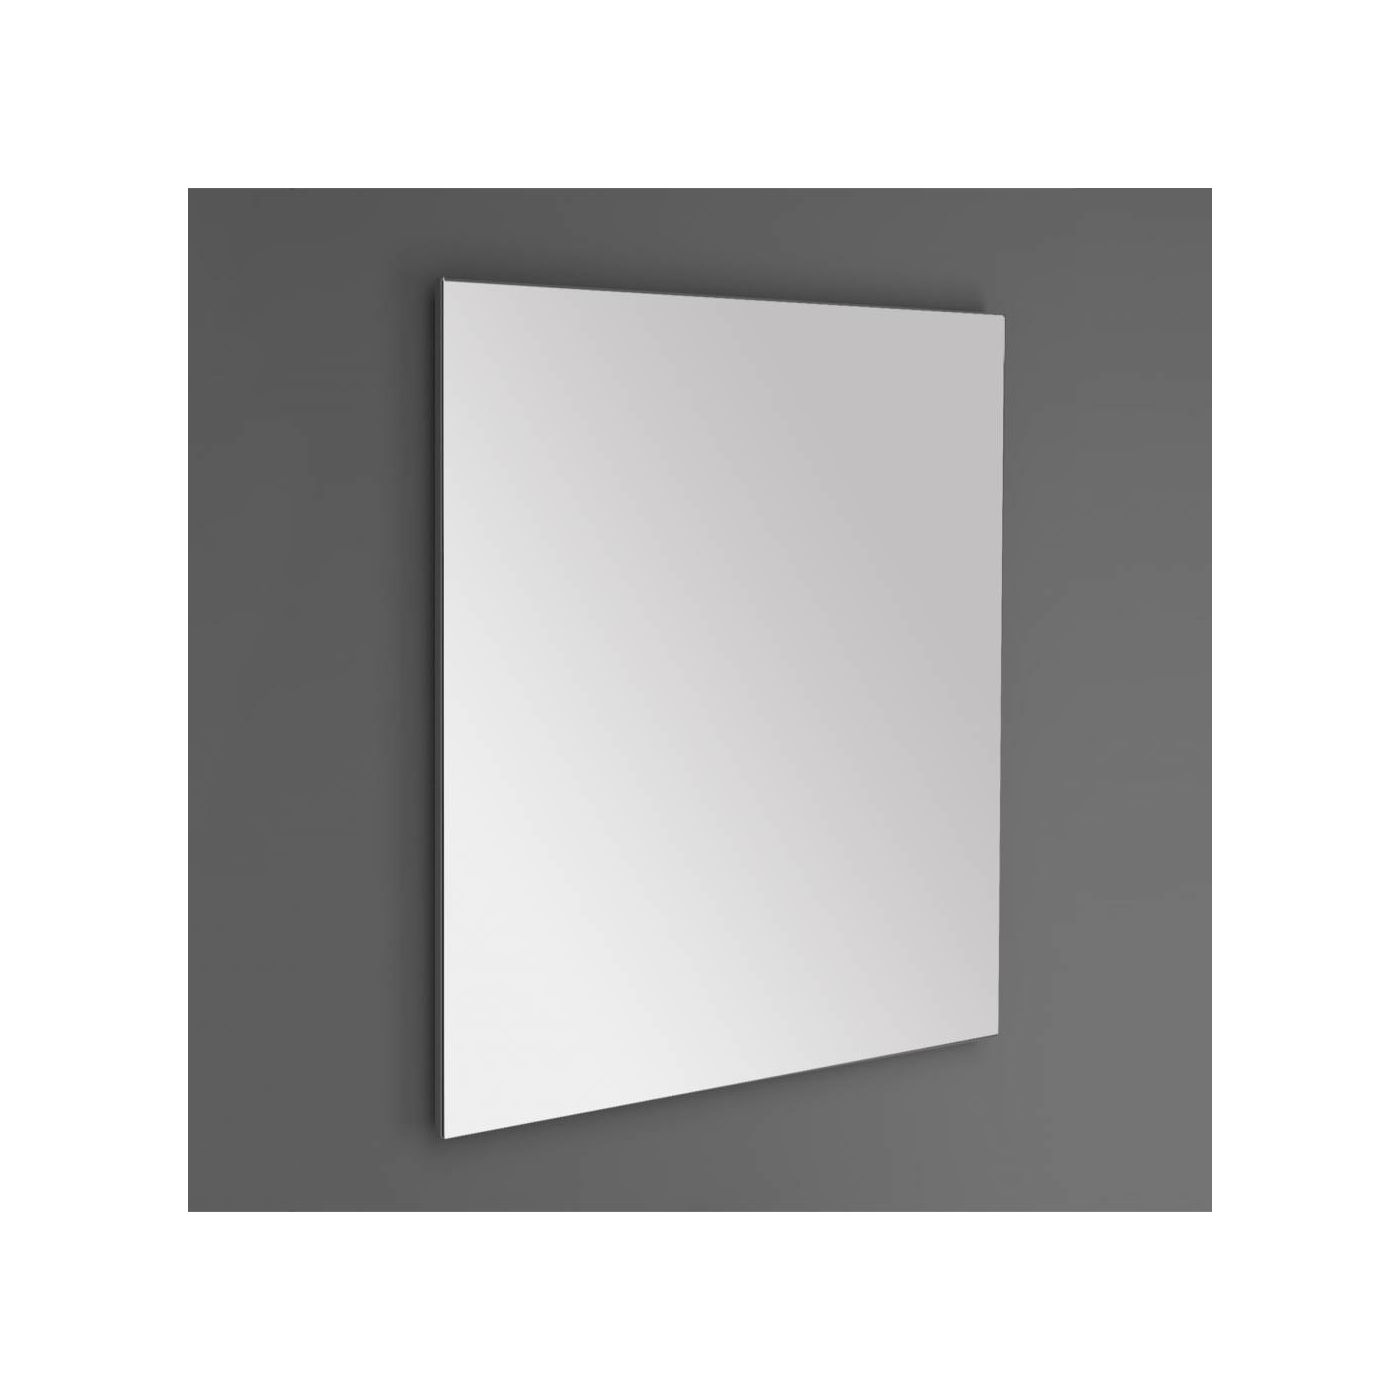 Neuer standaard spiegel met spiegelverwarming 60x80